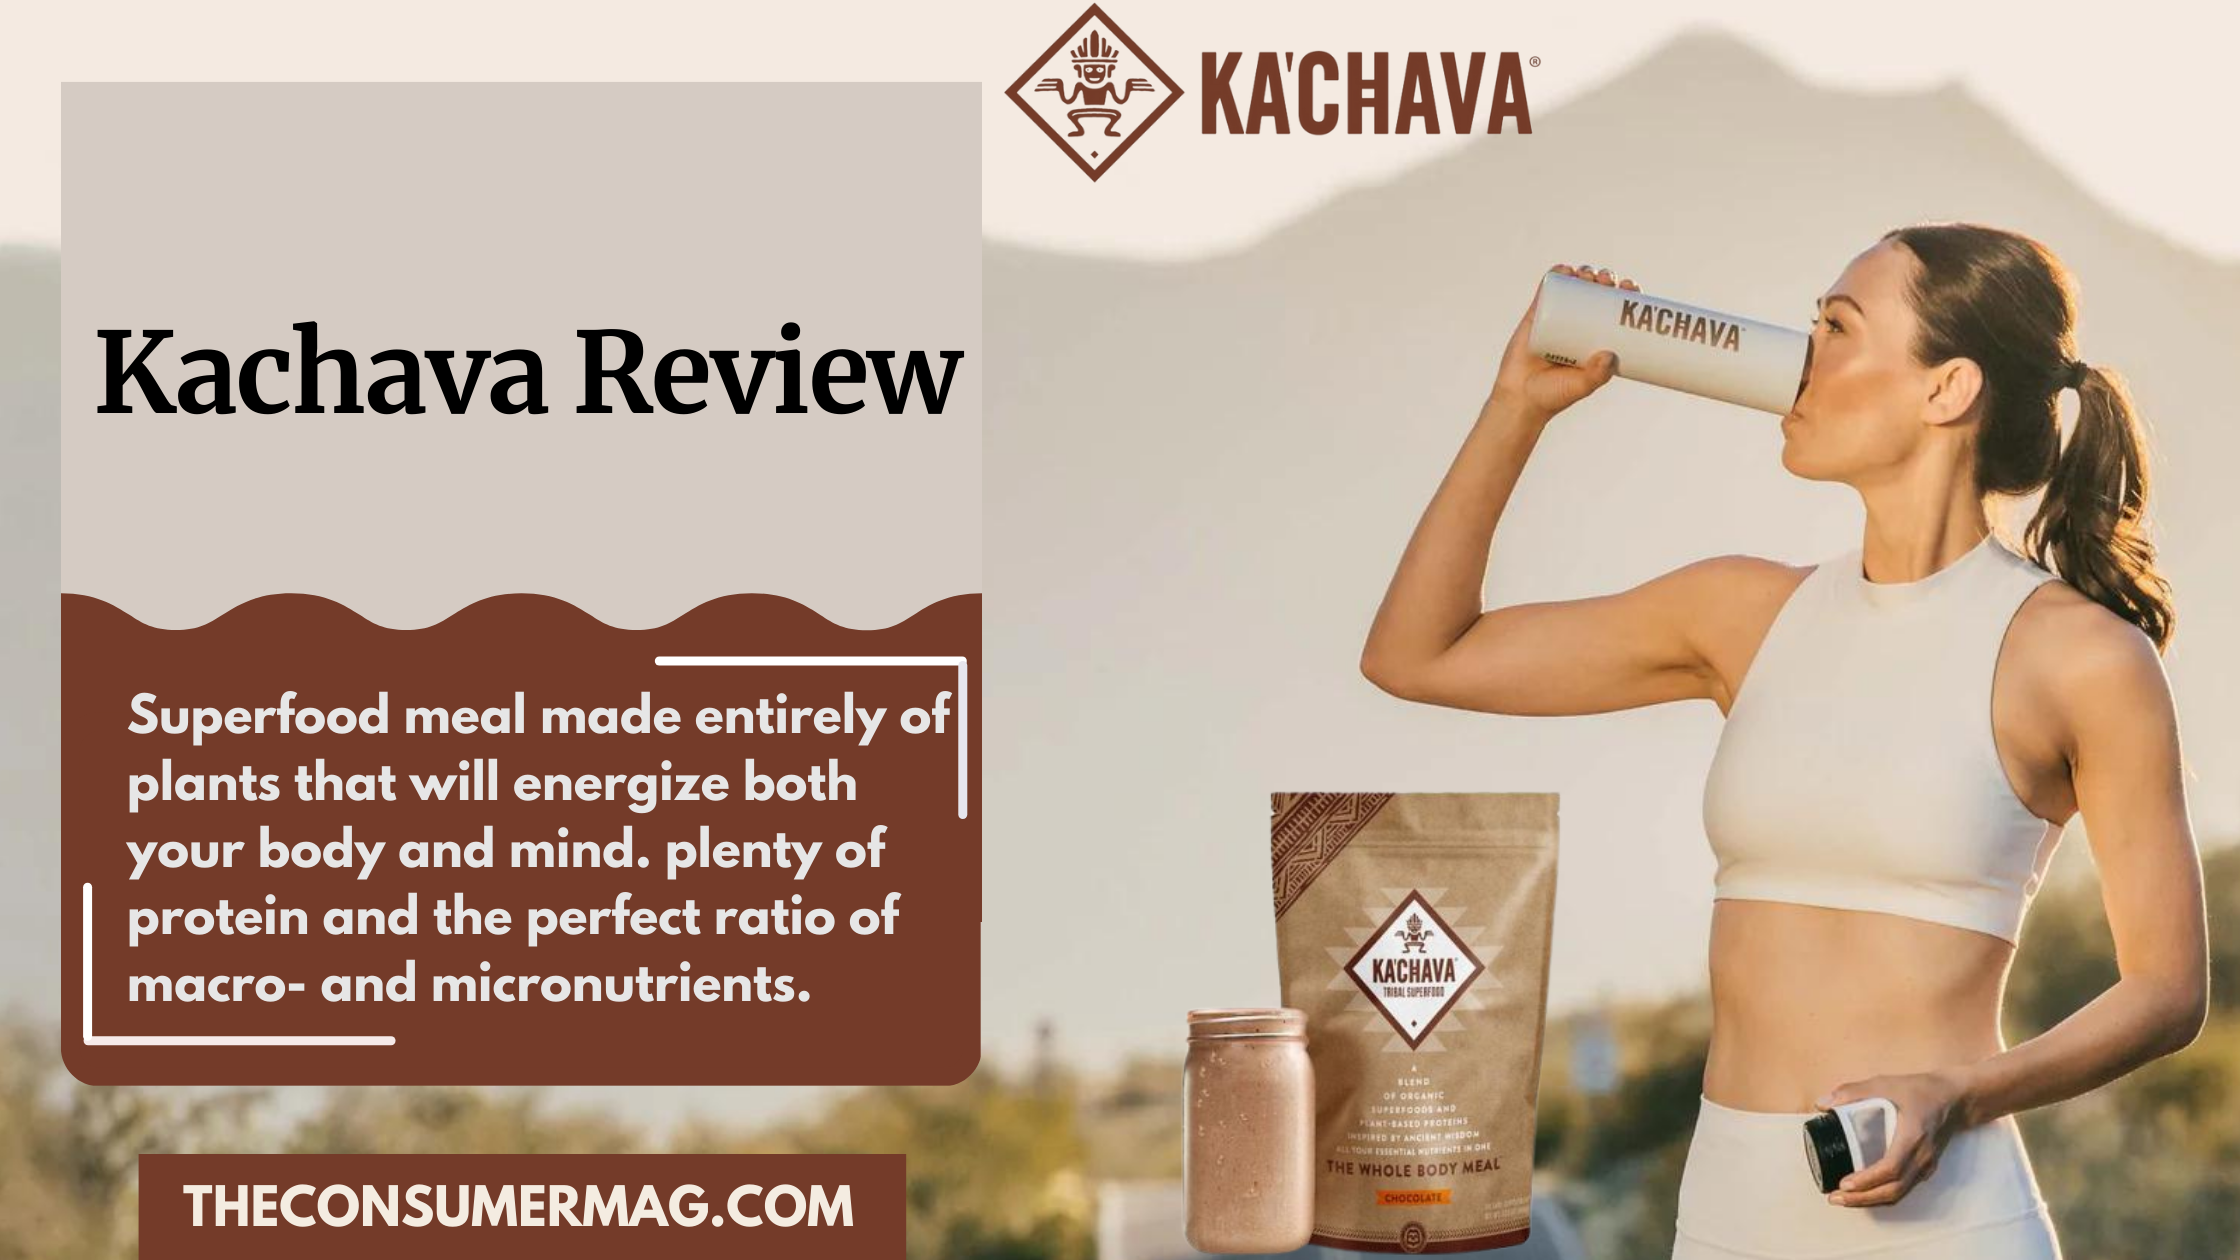 Kachava featured image